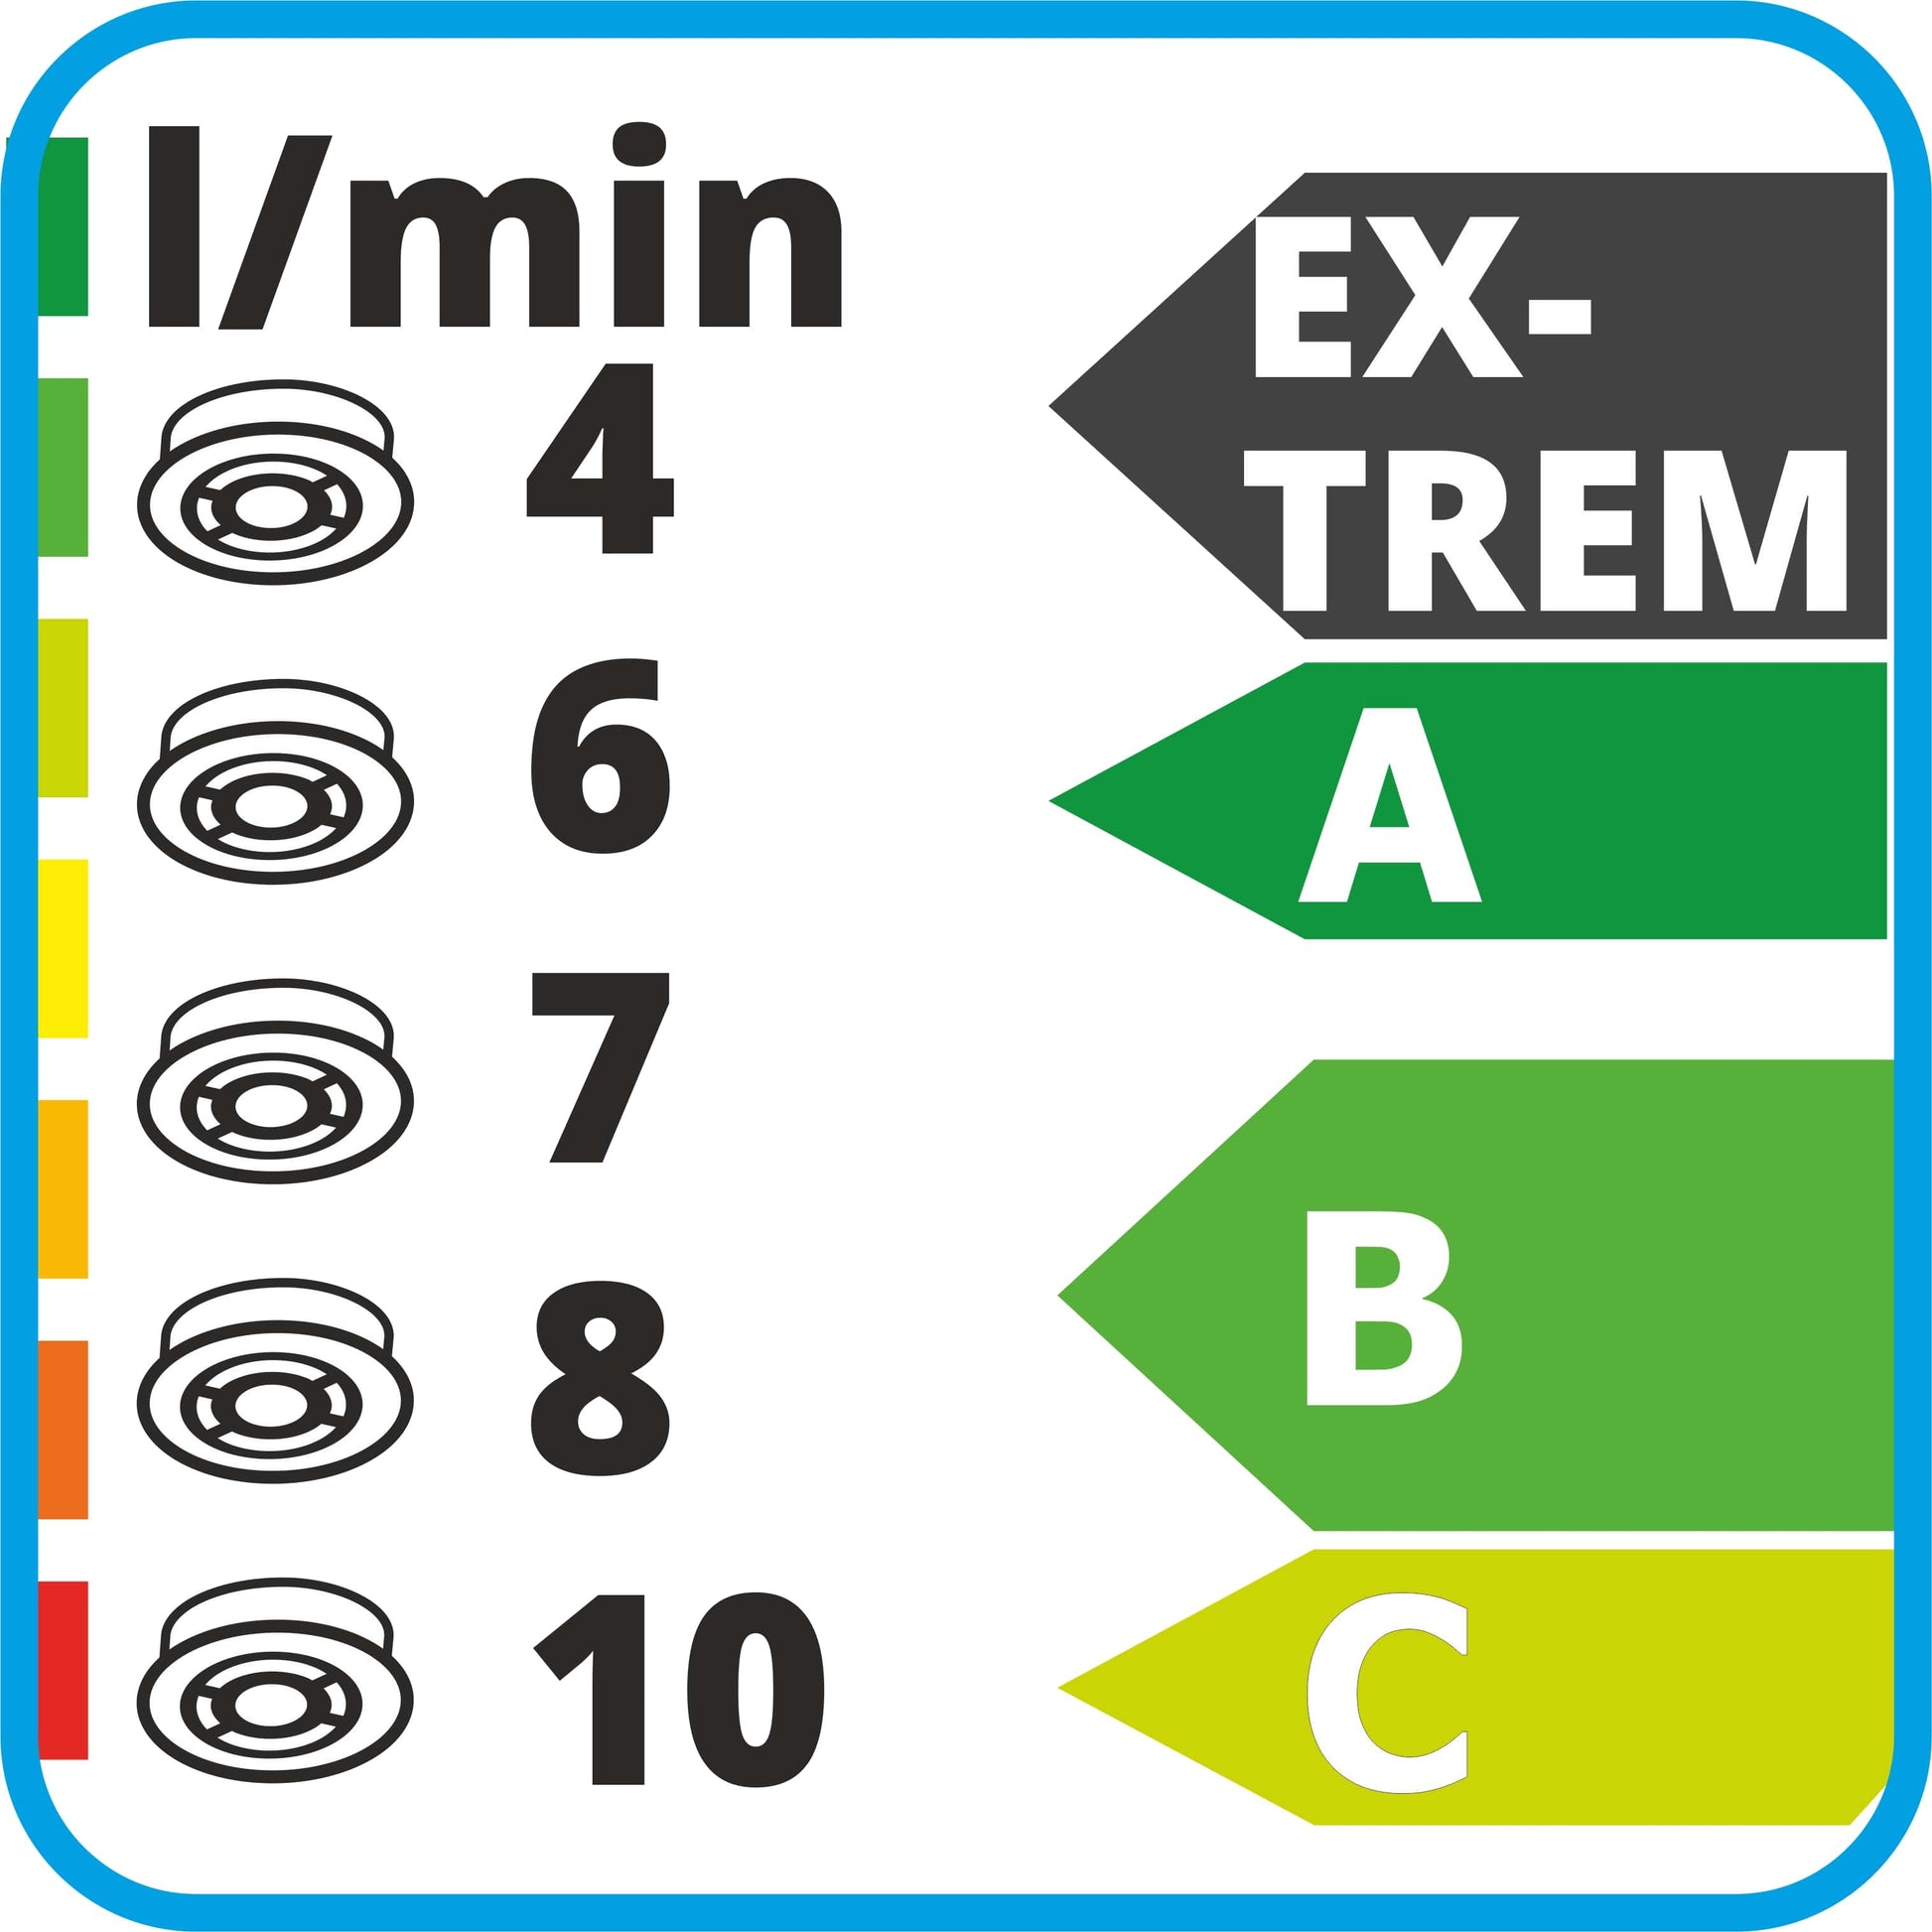 Zeichnung von Reglern schwarz weiss  4, 6, 7, 8, 10,  Energylabel  Extrem, A, B, C